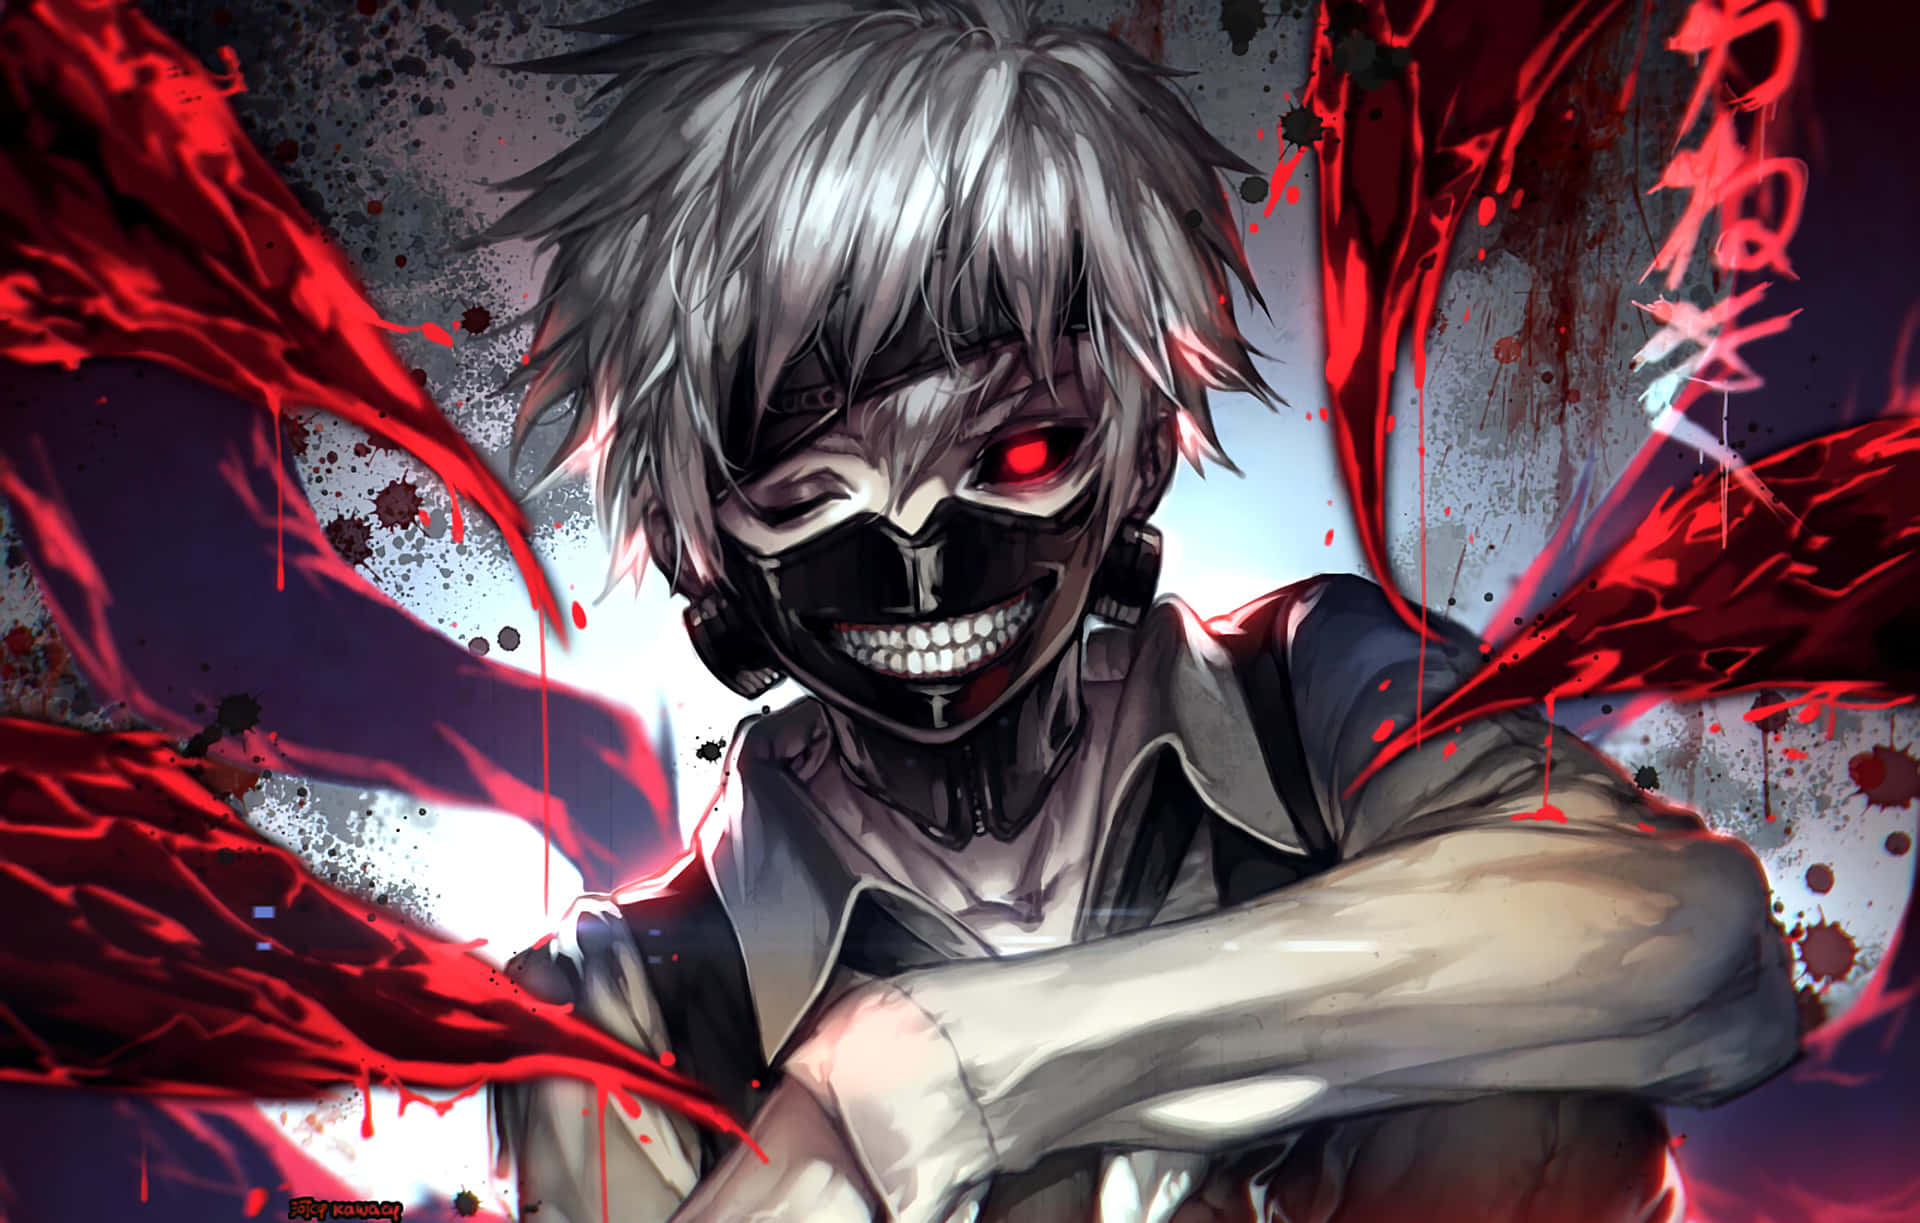 Ken Kaneki, the main protagonist of Tokyo Ghoul